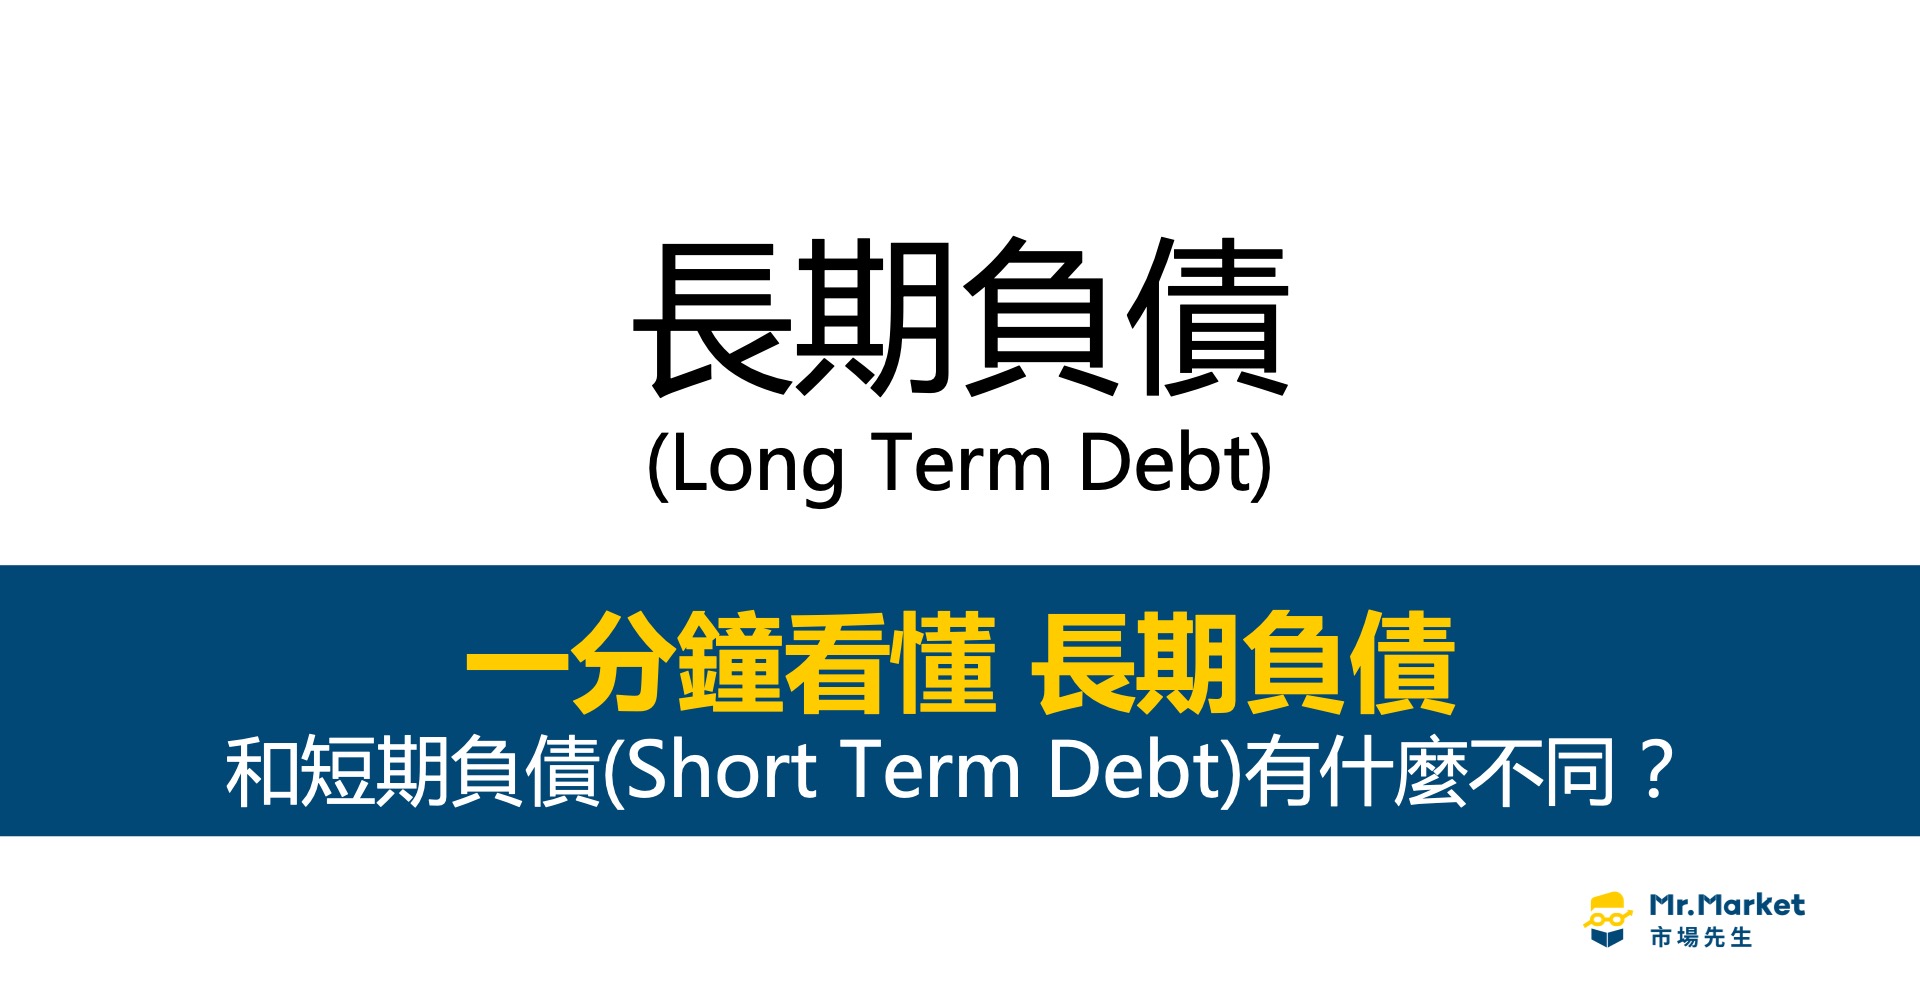 長期負債是什麼意思？和企業的短期負債差異在哪？